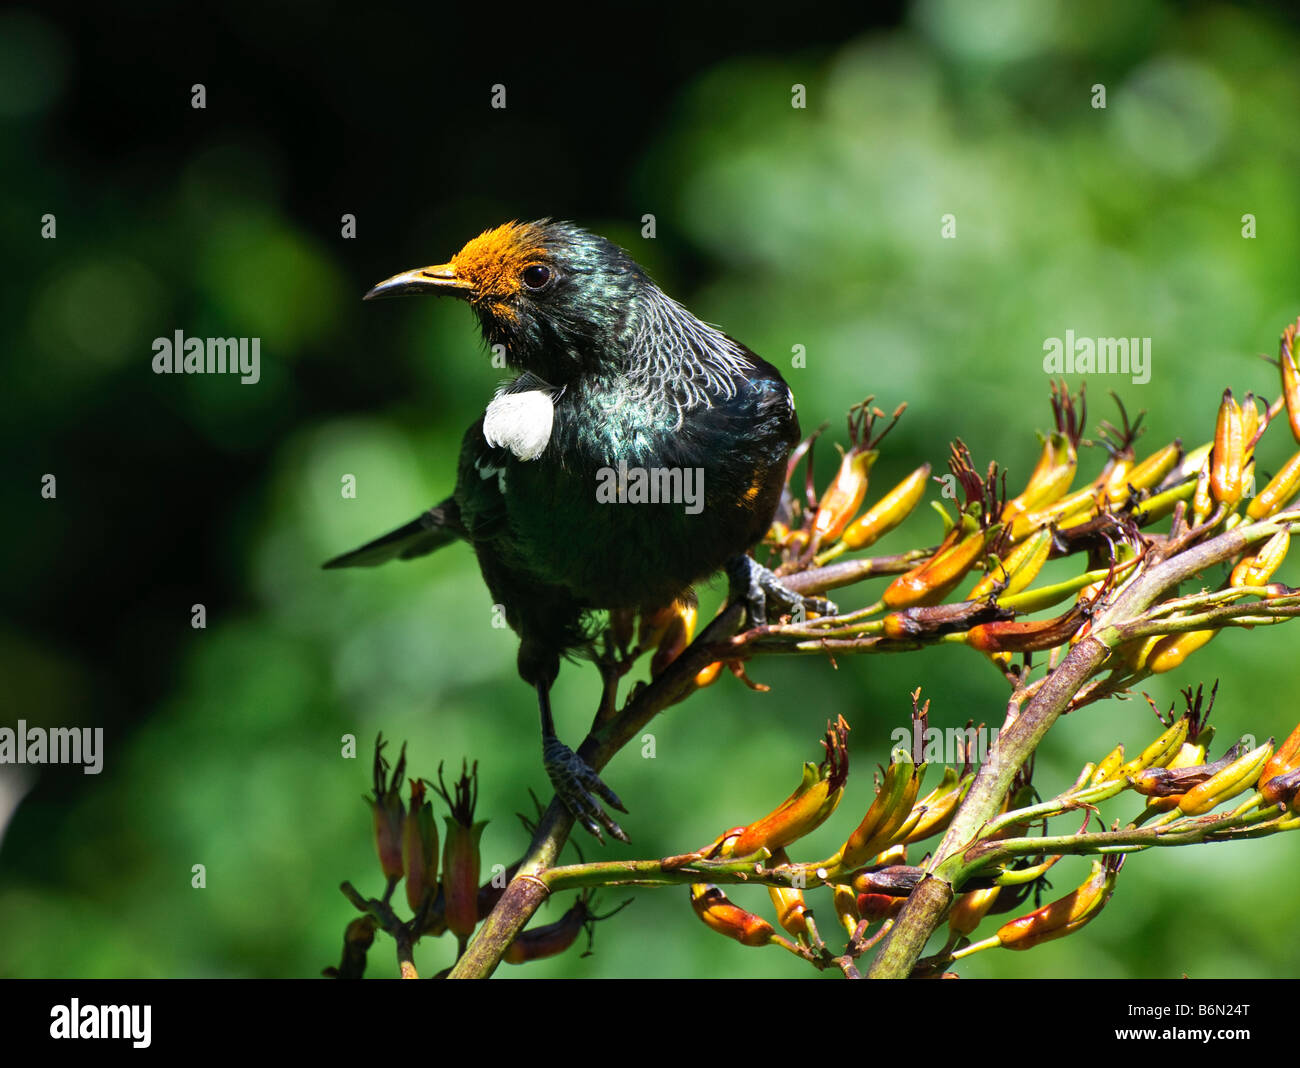 Tui (Parson, oiseau Prosthemadera novaeseelandiae - originaire de la Nouvelle-Zélande) d'oiseaux se nourrissant de graines de lin Banque D'Images